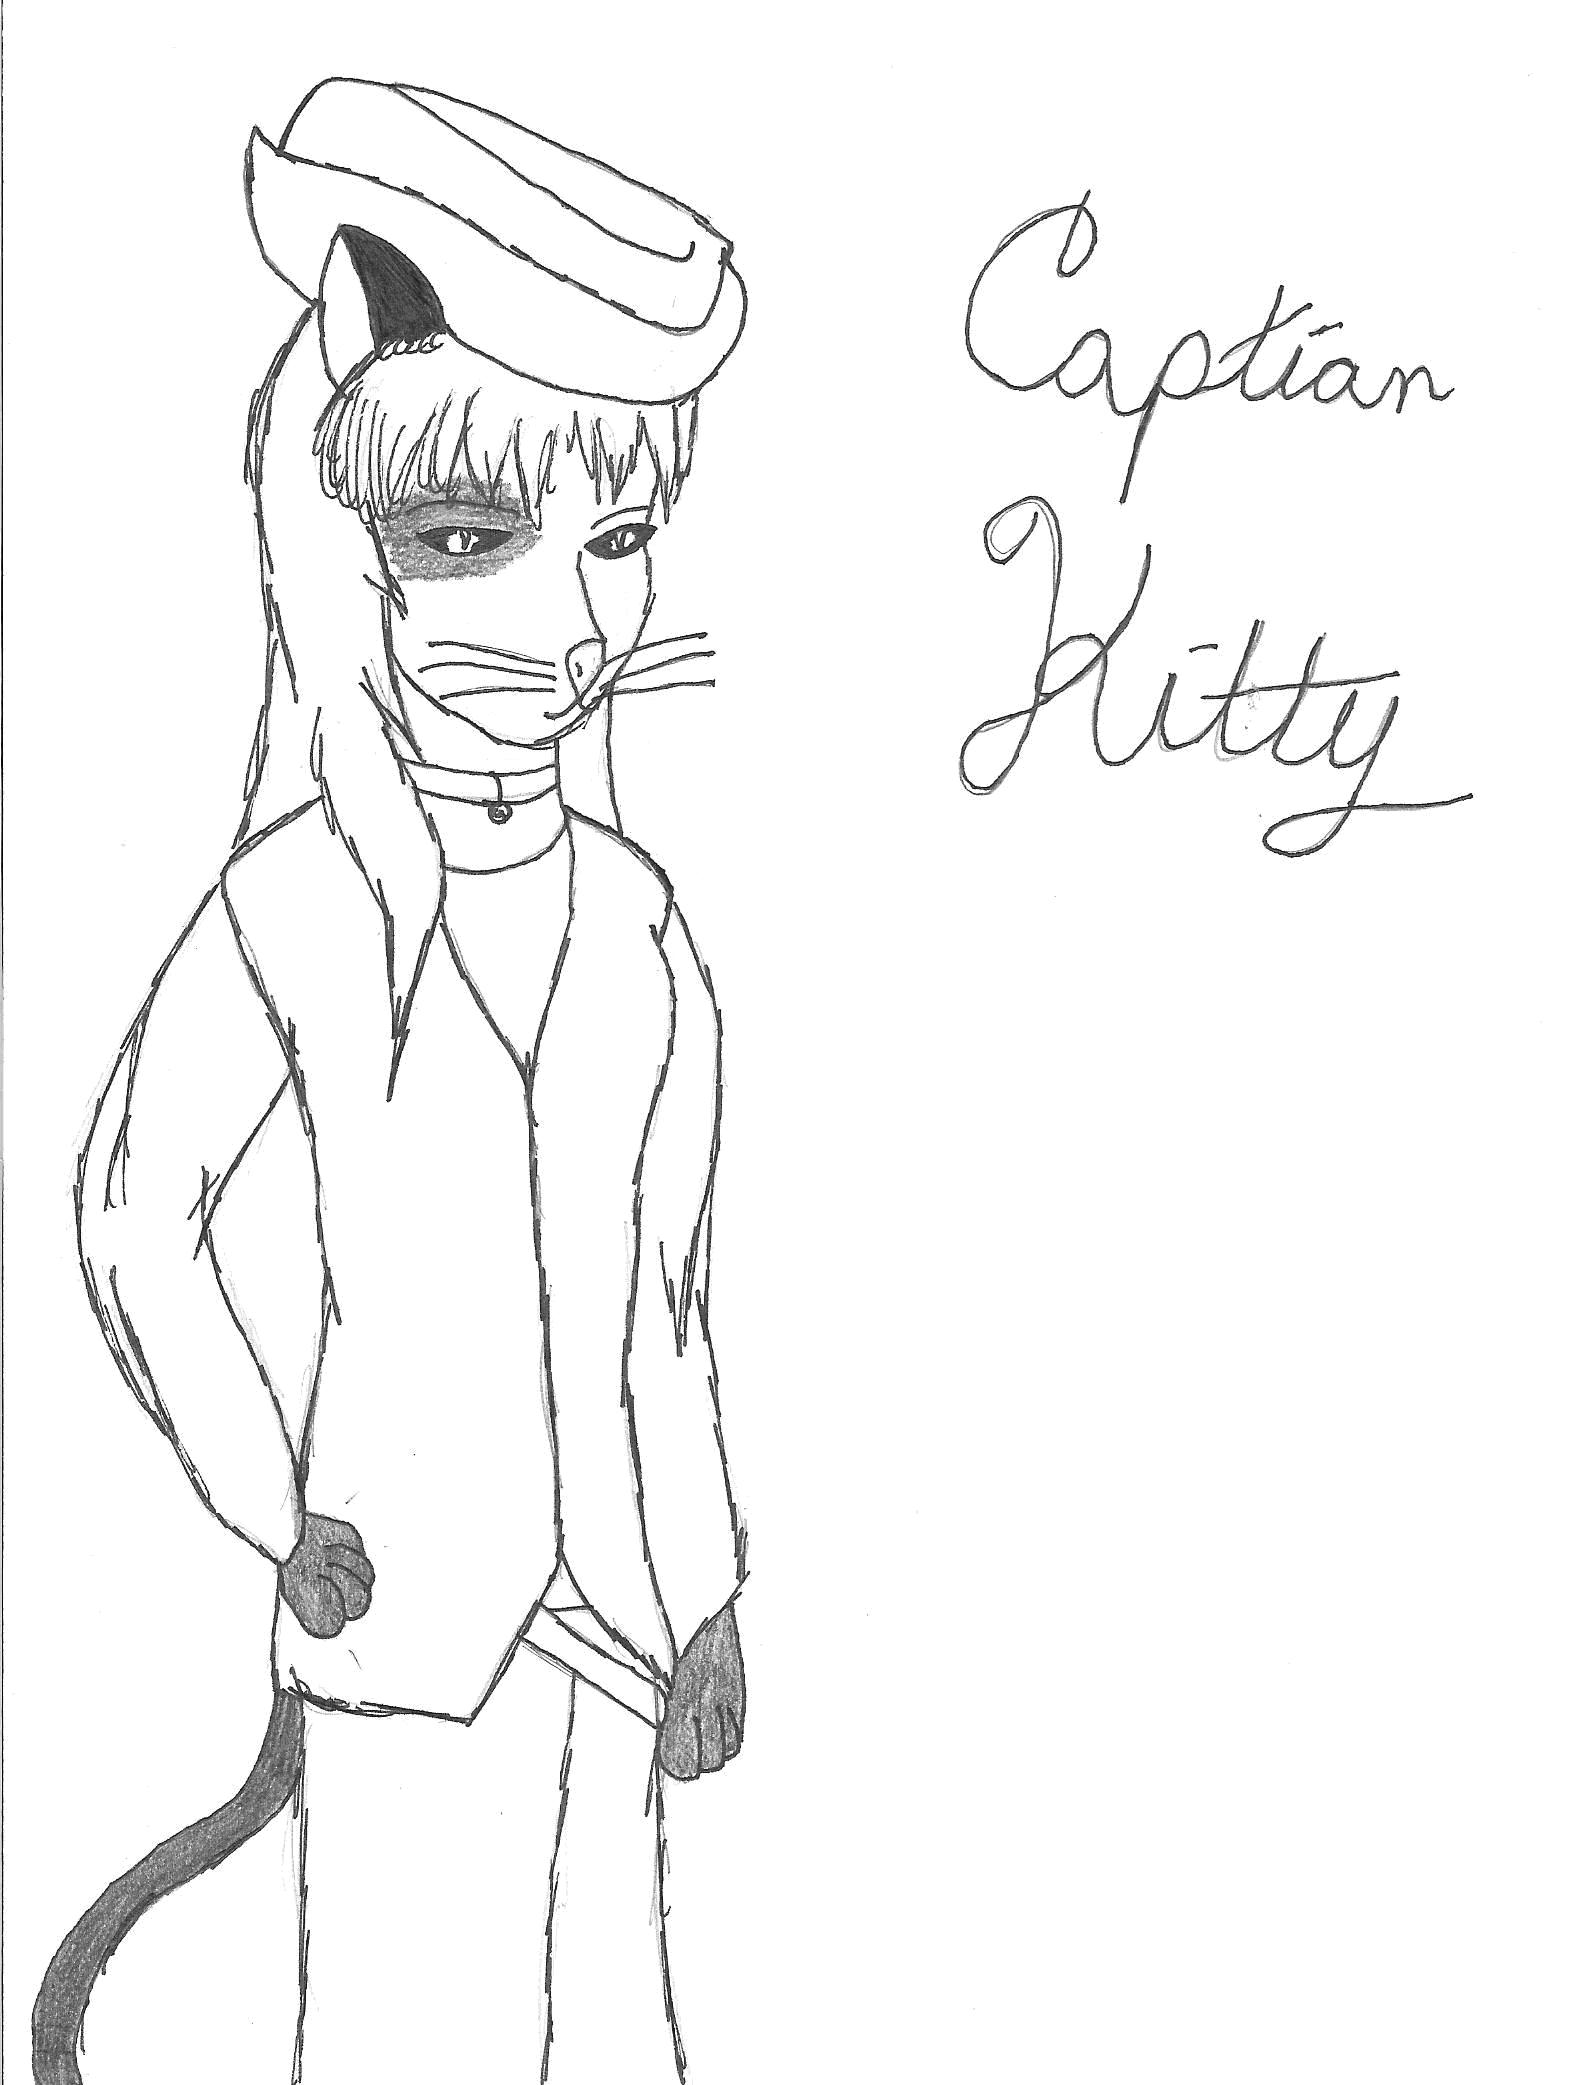 Captain Kitty by Rei_Anul_Sama